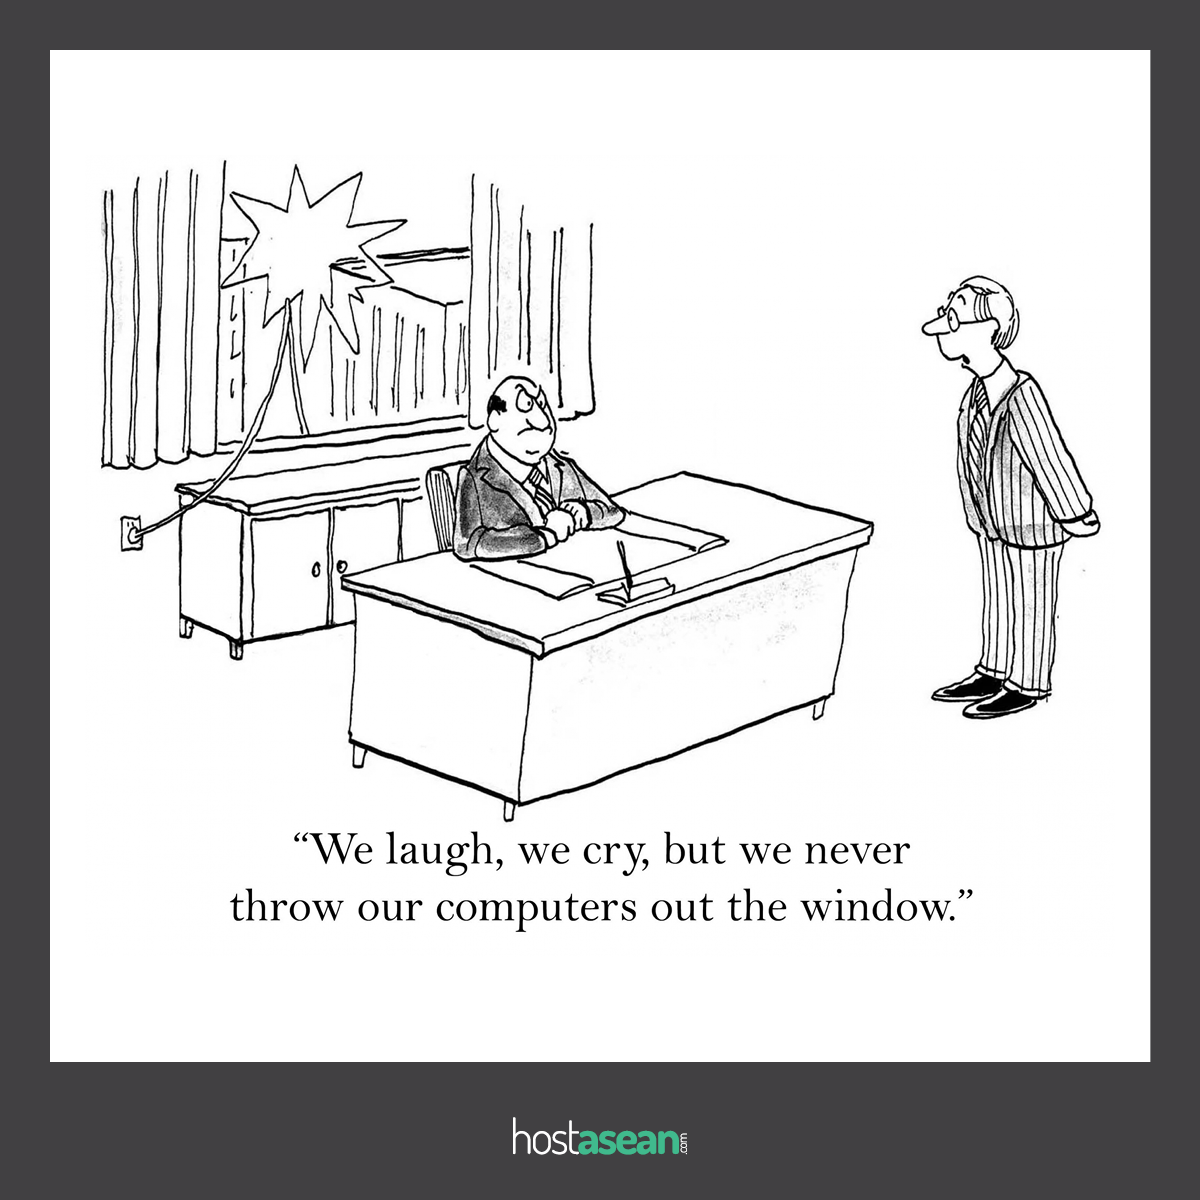 Computer vs window